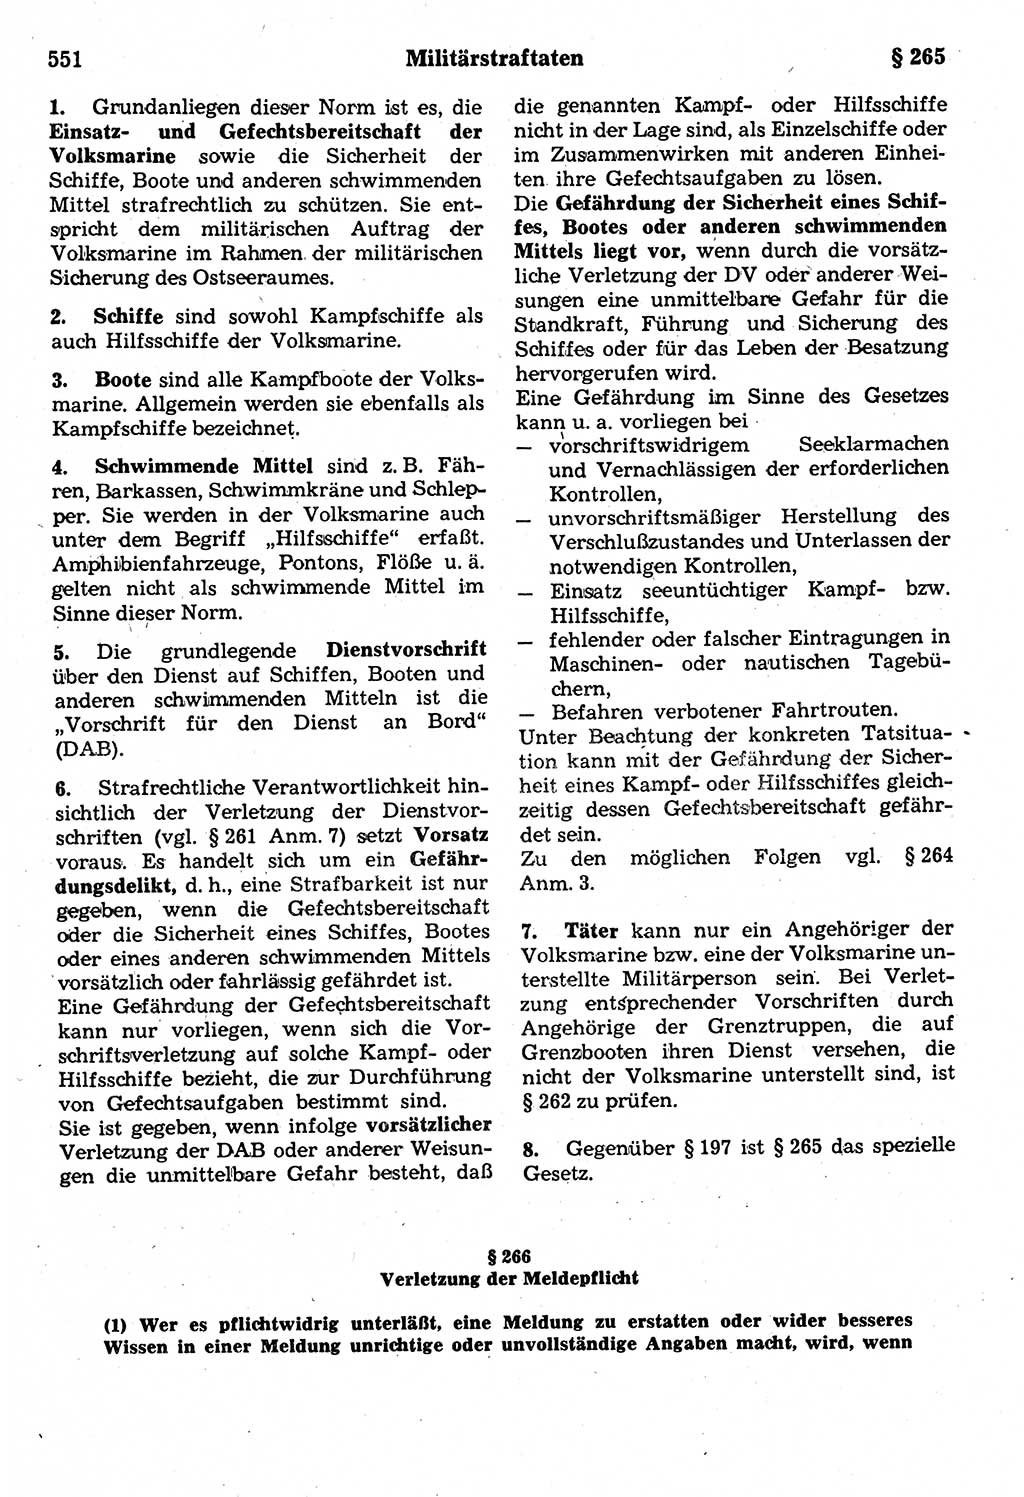 Strafrecht der Deutschen Demokratischen Republik (DDR), Kommentar zum Strafgesetzbuch (StGB) 1987, Seite 551 (Strafr. DDR Komm. StGB 1987, S. 551)